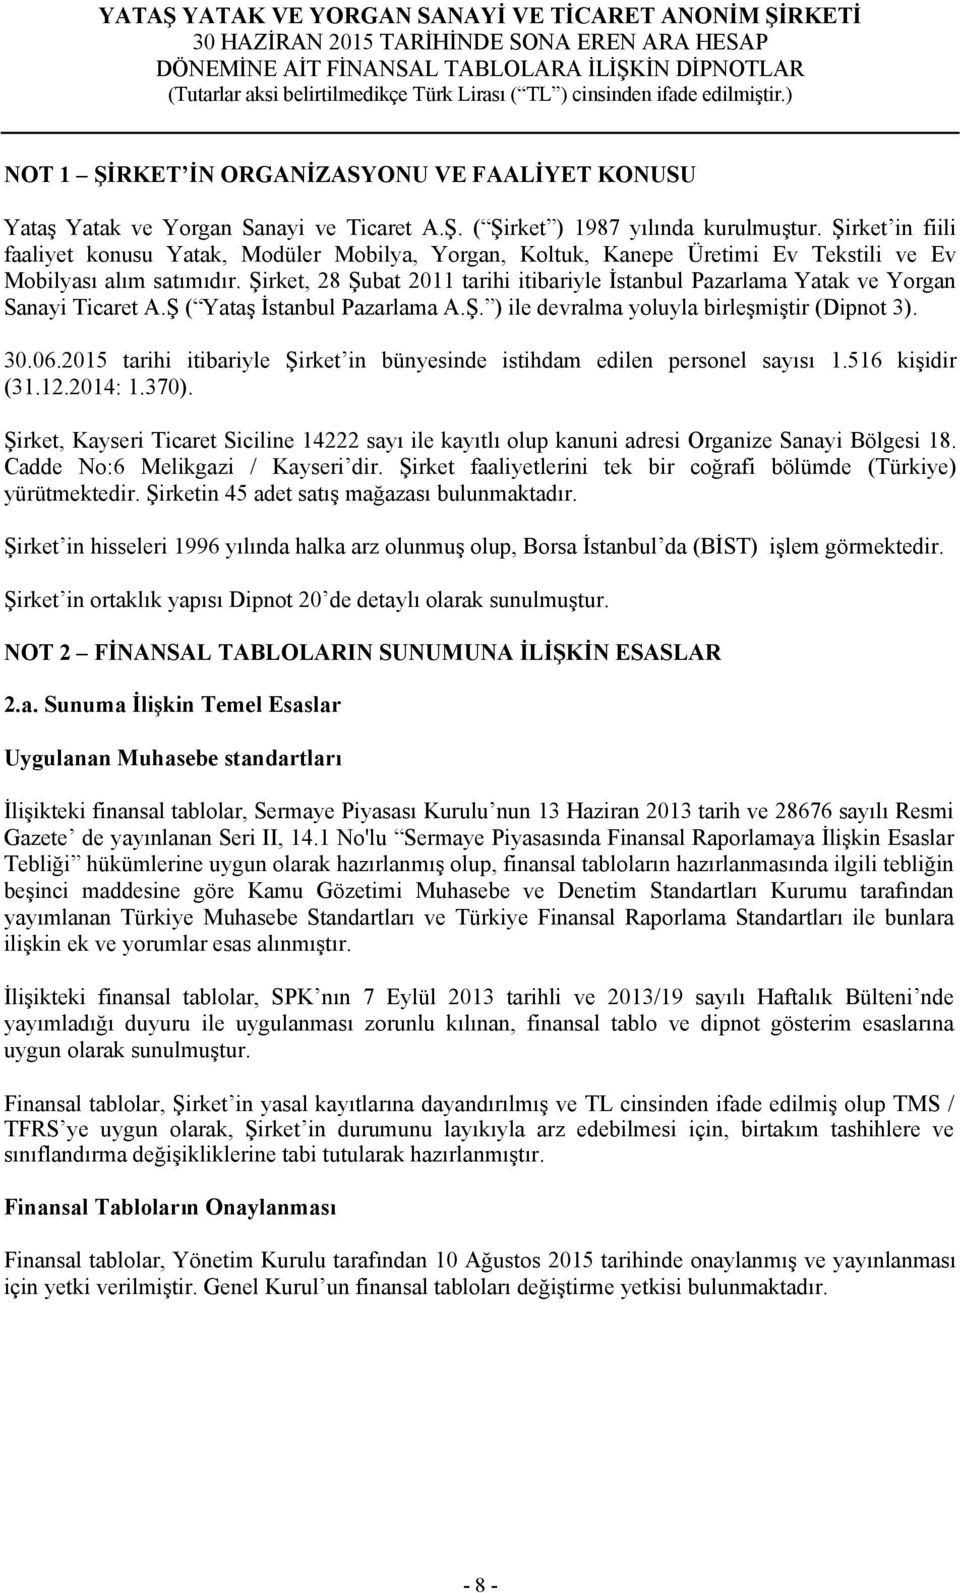 Şirket, 28 Şubat 2011 tarihi itibariyle İstanbul Pazarlama Yatak ve Yorgan Sanayi Ticaret A.Ş ( Yataş İstanbul Pazarlama A.Ş. ) ile devralma yoluyla birleşmiştir (Dipnot 3).